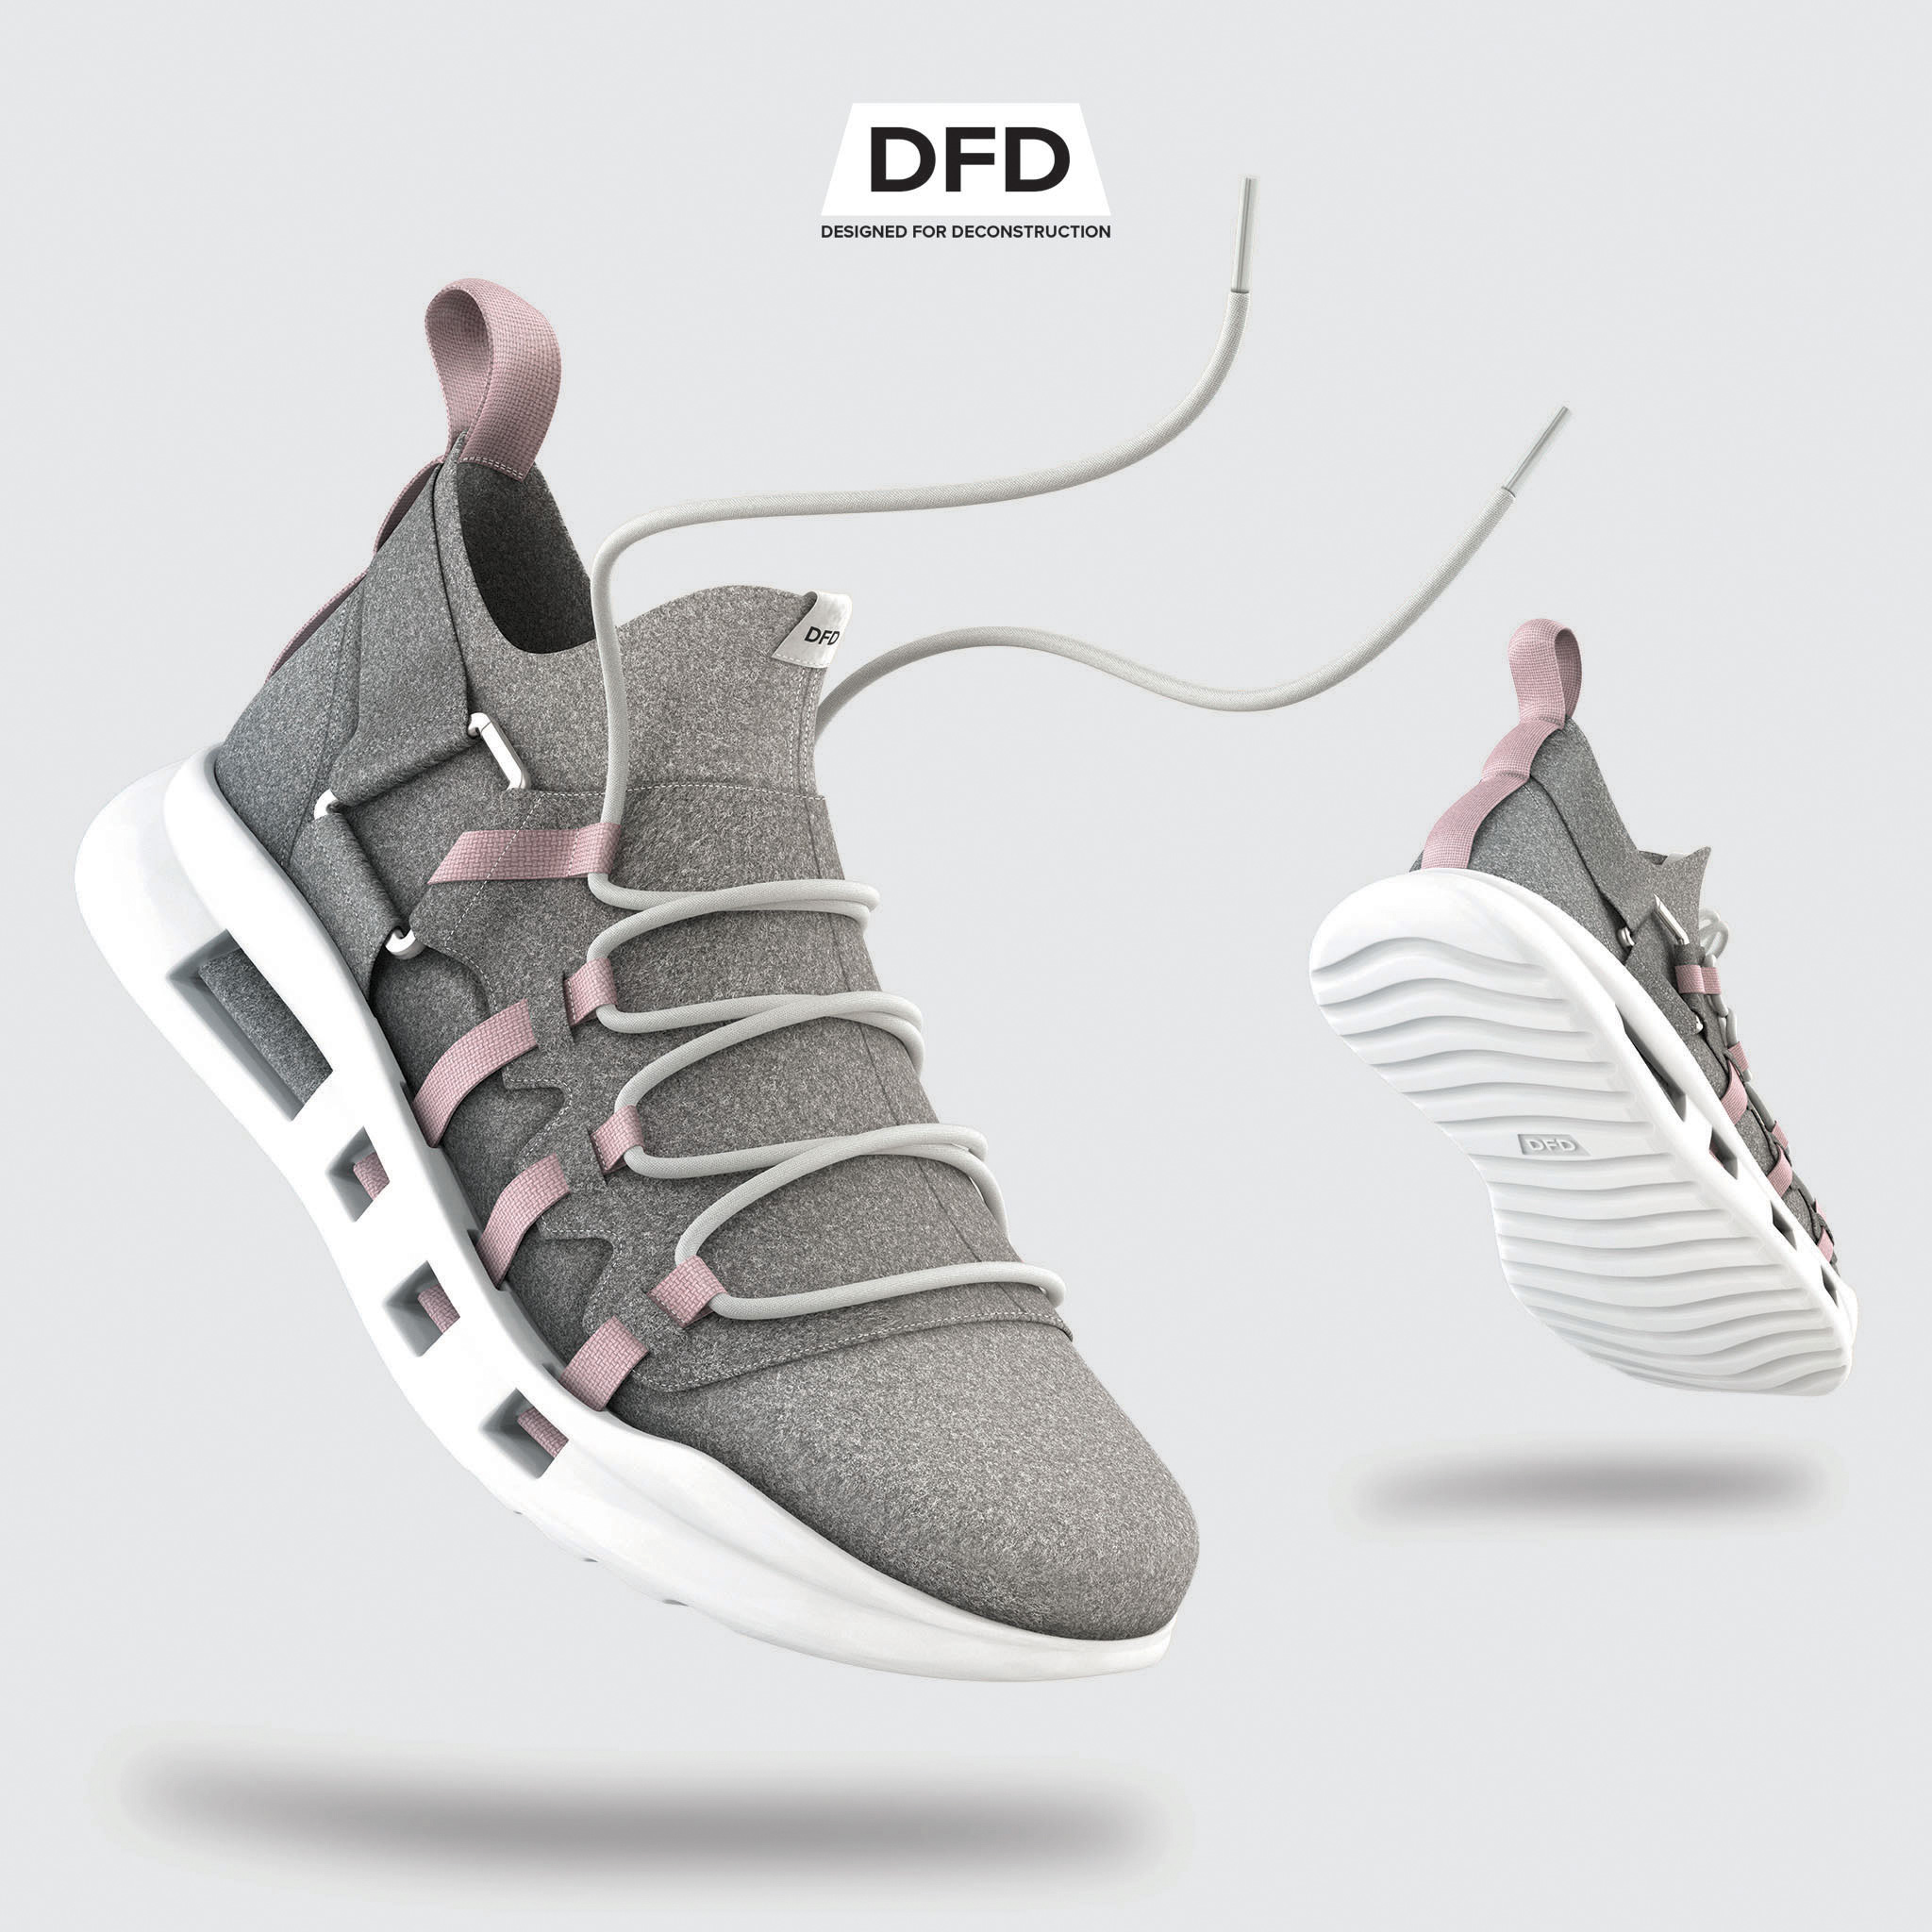 DFD shoe design (2019), Gannon McHugh